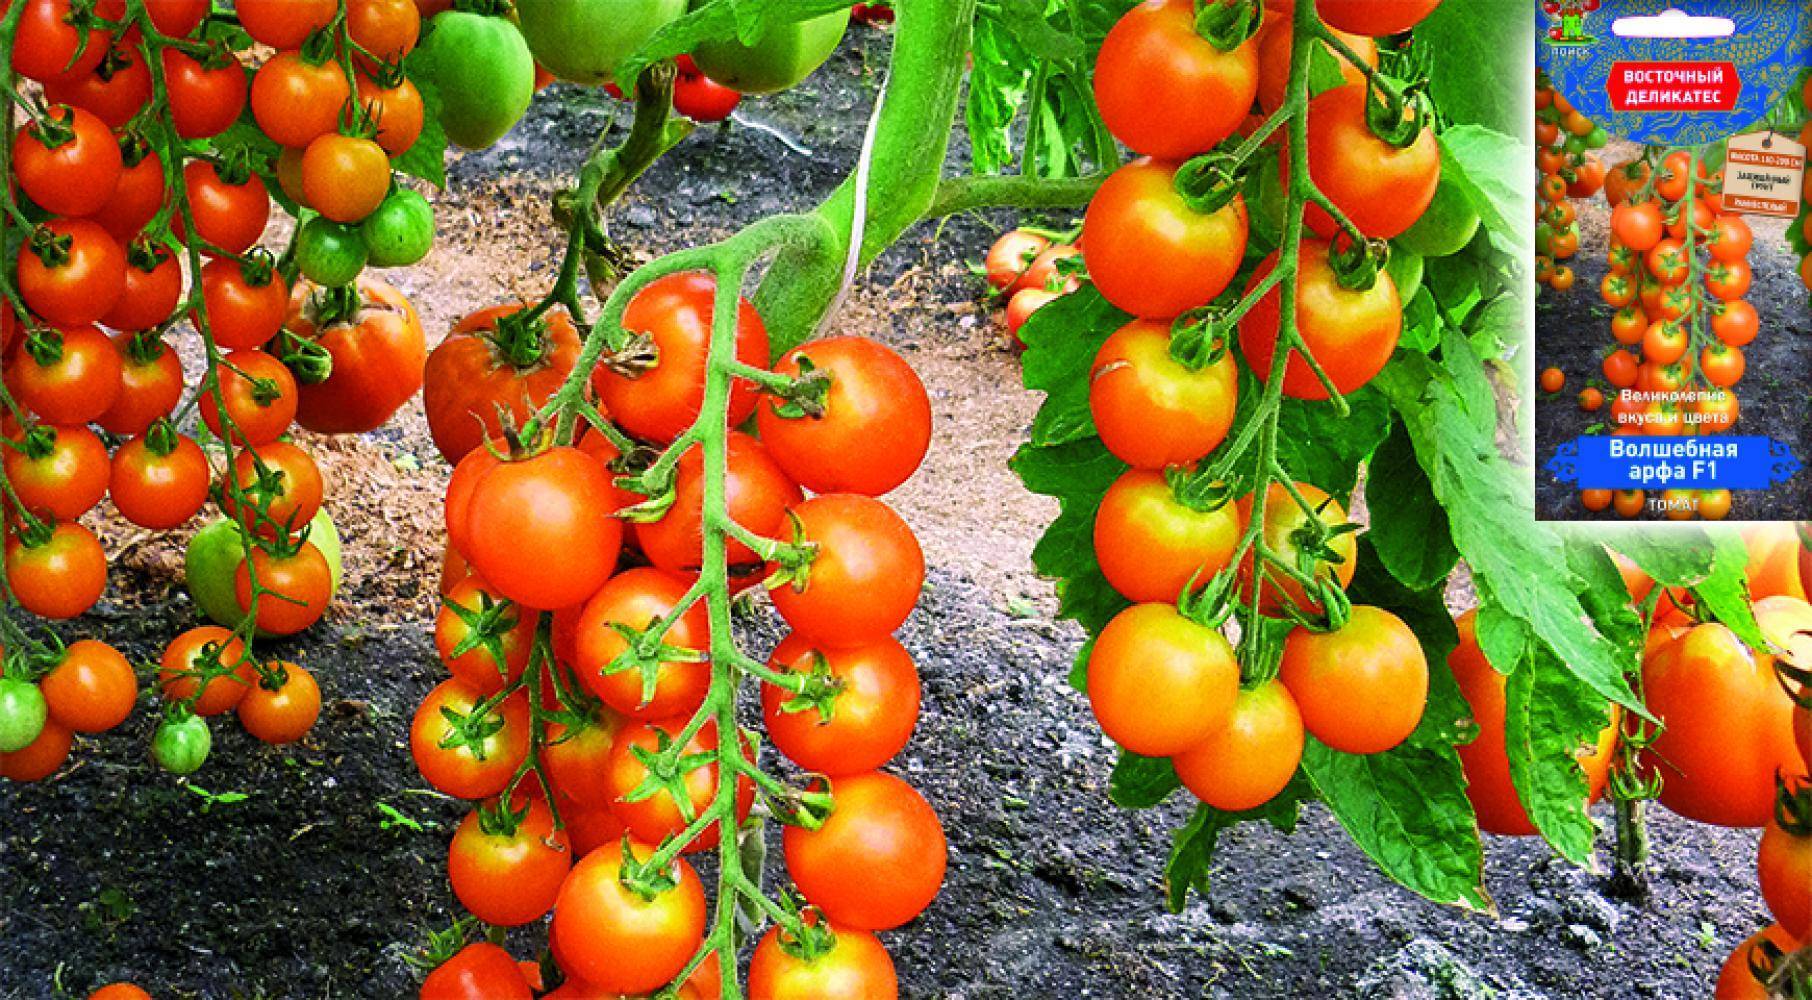 Томат волшебная арфа f1: характеристика и описание сорта, фото помидоров черри, отзывы об урожайности куста